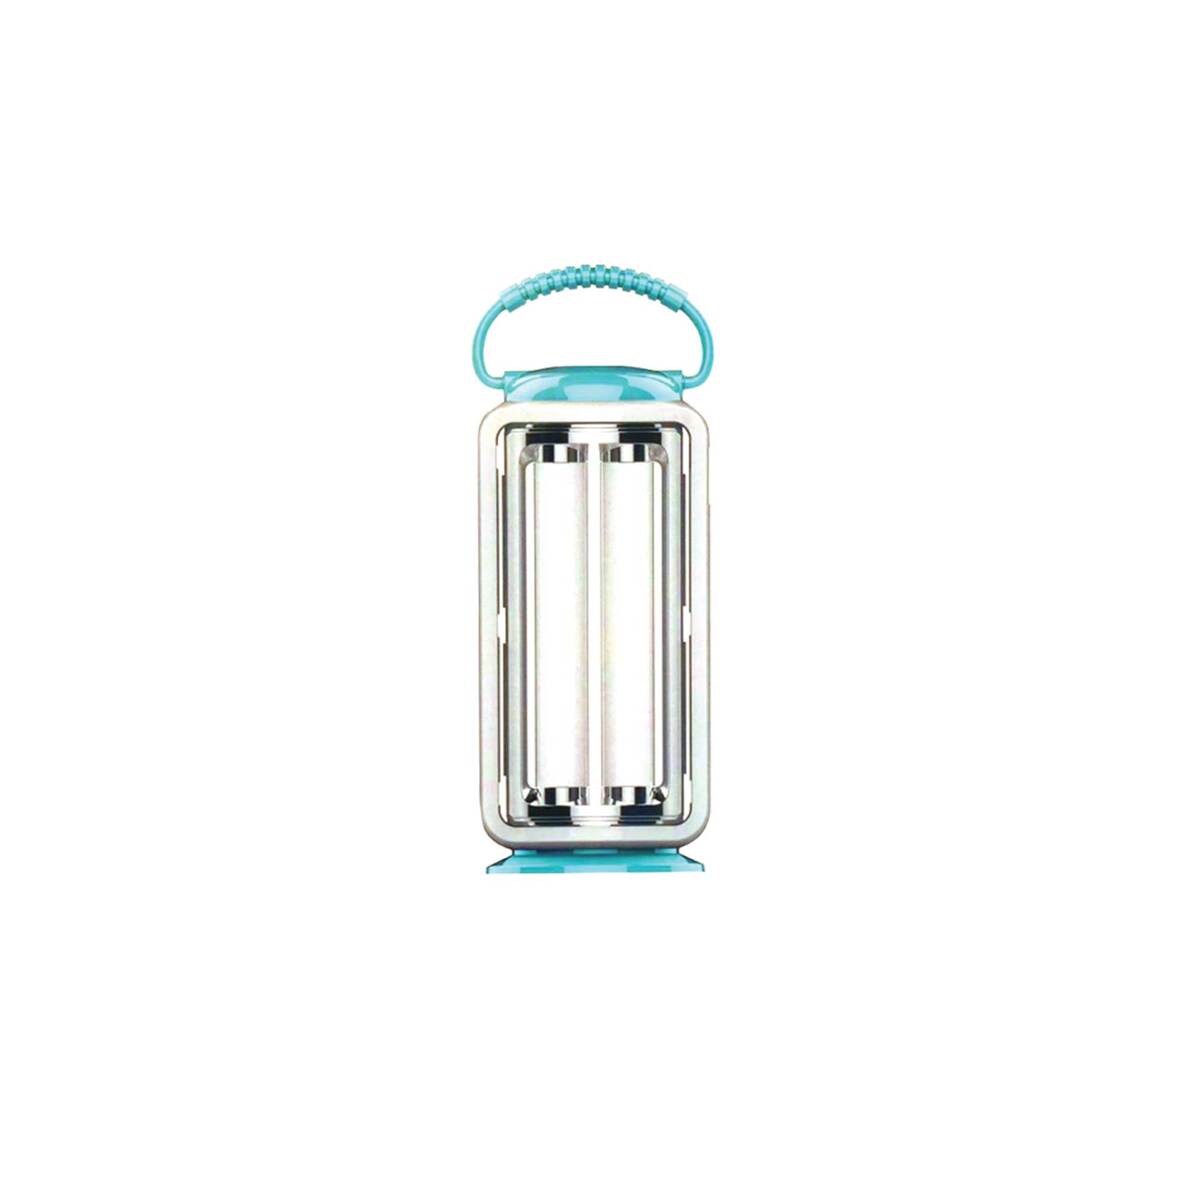 اشتري قم بشراء Universal Emergency Lantern UN-EL7999 Online at Best Price من الموقع - من لولو هايبر ماركت Emergency Lamps في السعودية